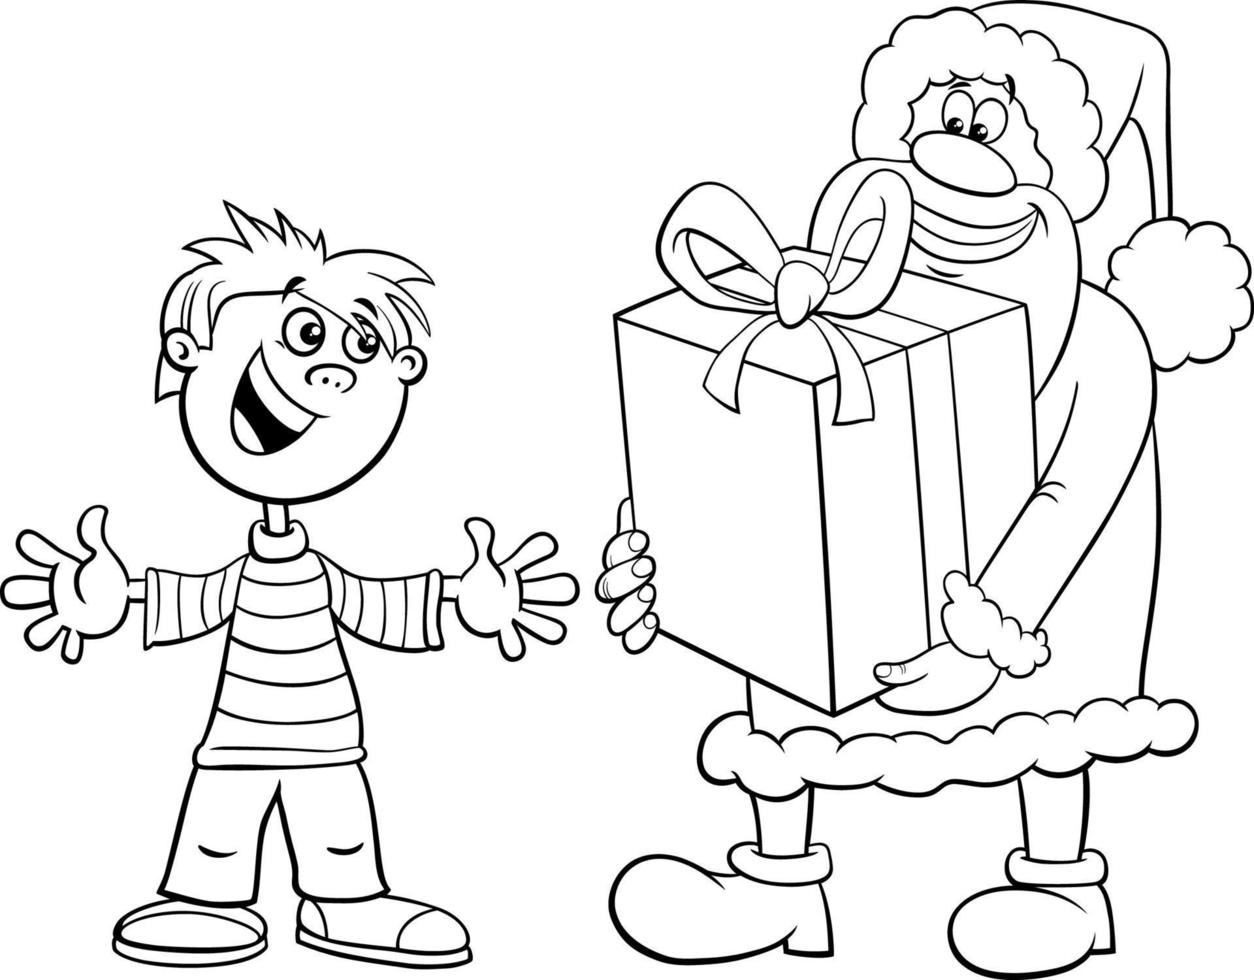 karikatur-weihnachtsmann, der einem jungen malseite ein großes geschenk gibt vektor